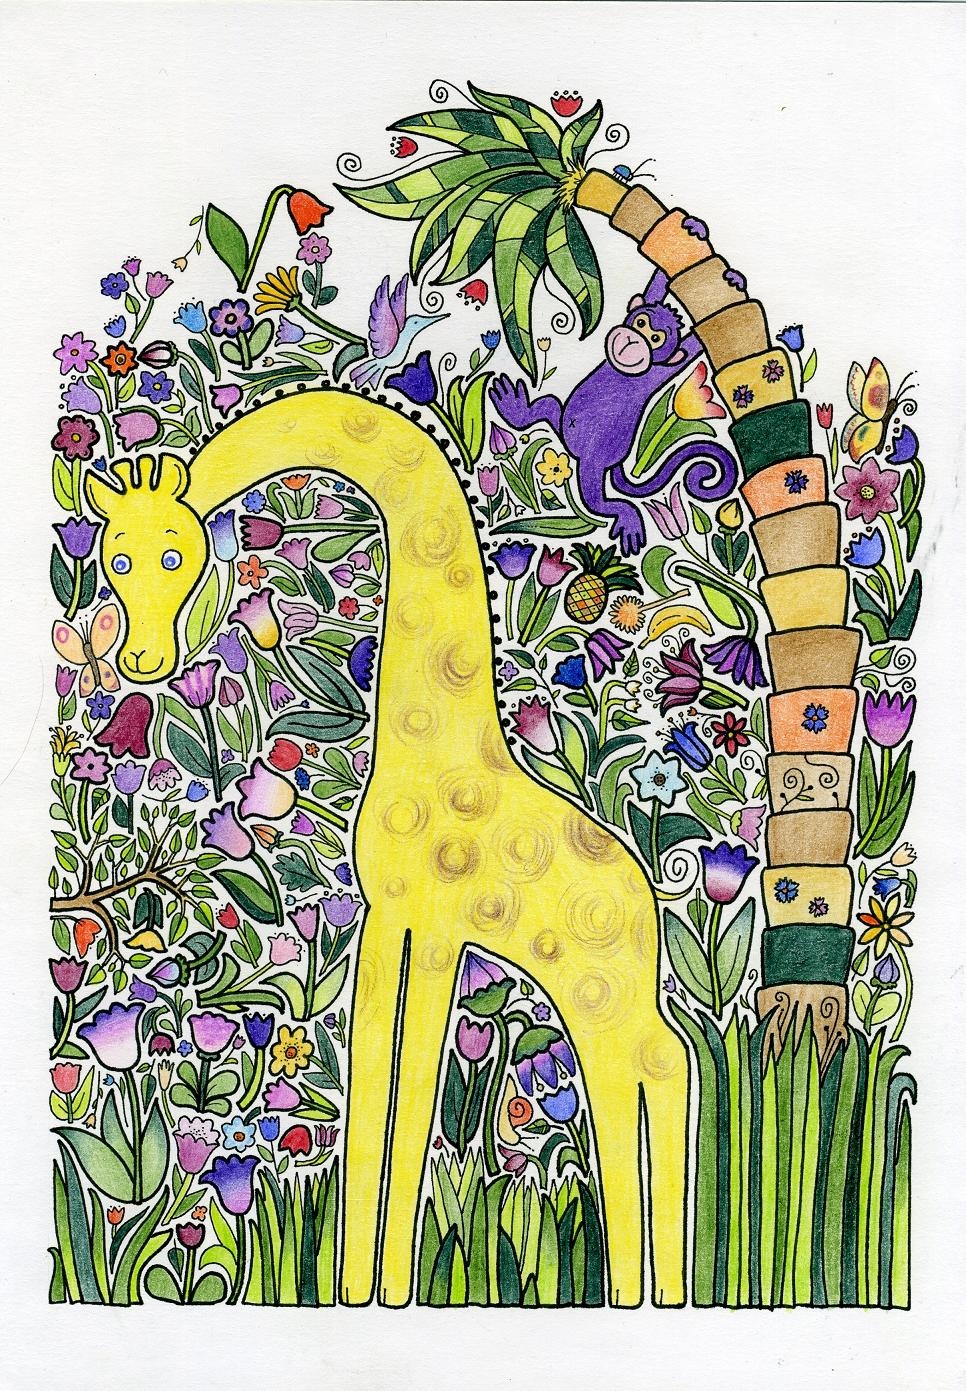 Žirafka - mozaika, A4, 2009